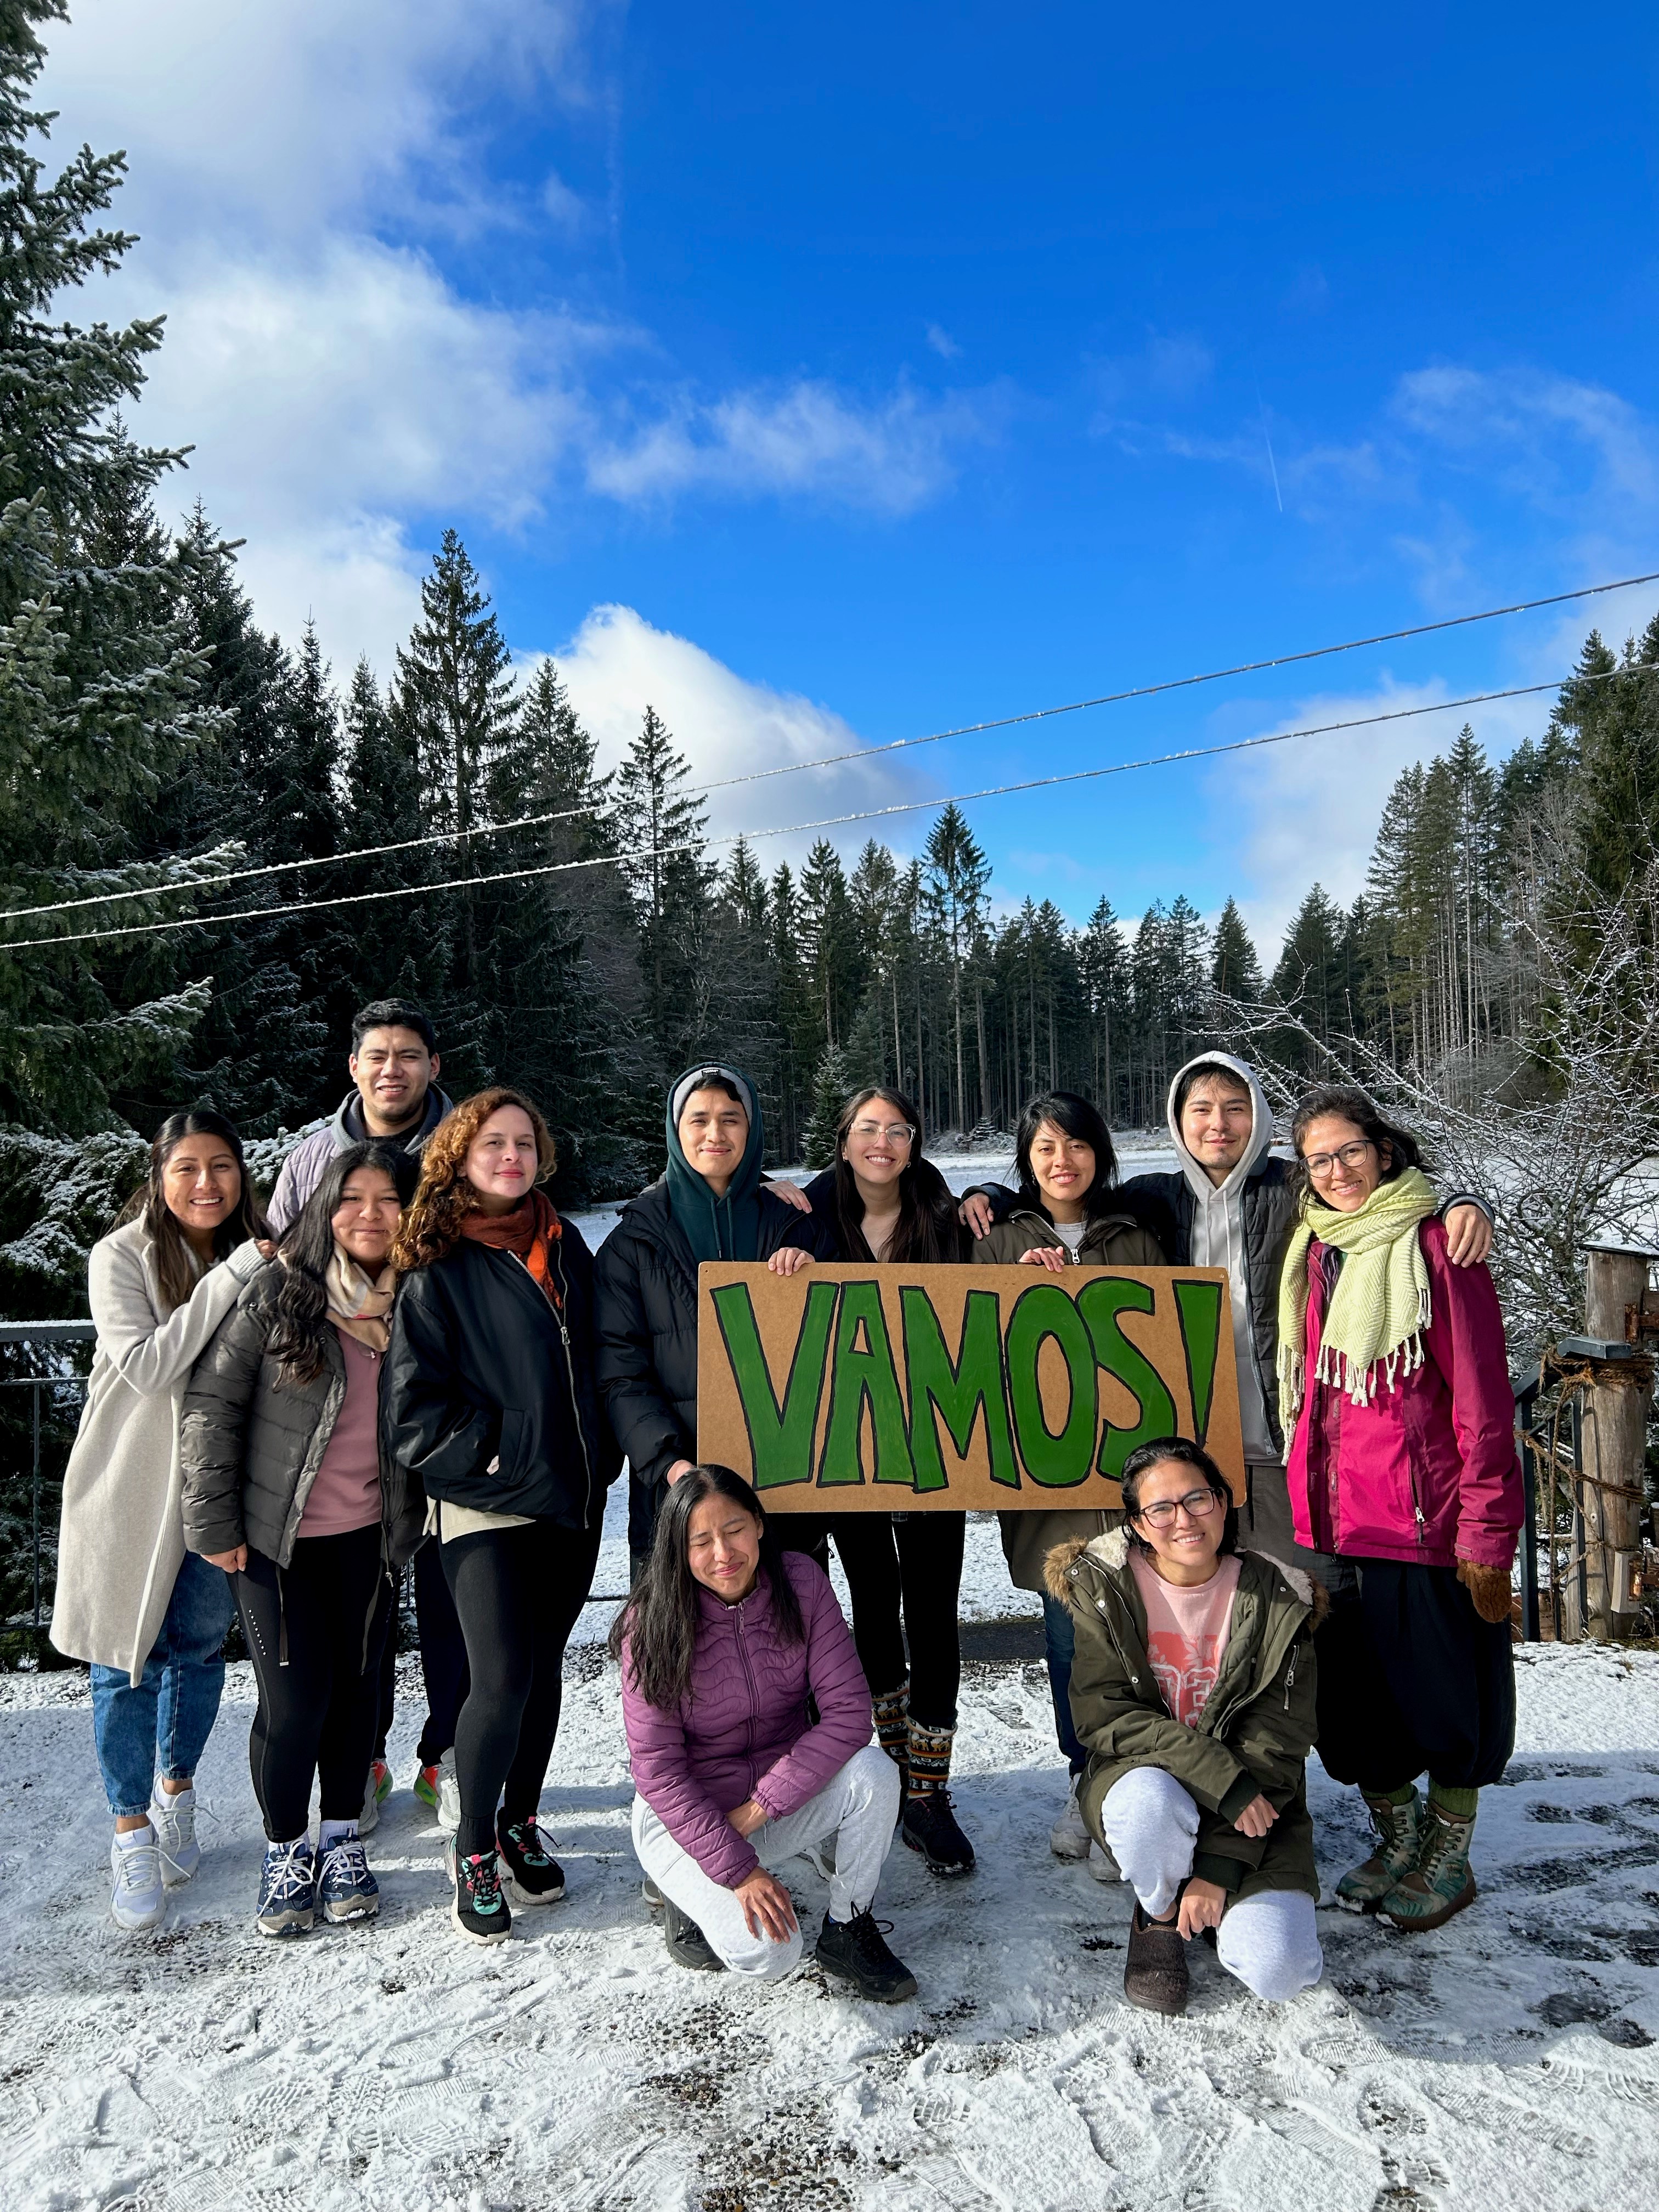 Gruppenfote der Vamos Freiwilligen mit Betreuern im Schnee. Die Freiwilligen halten ein Pappkarton Schild hoch, auf dem in grün VAMOS! steht. Im Hintergrund blauer Himmel und beschneite Nadelbäume.